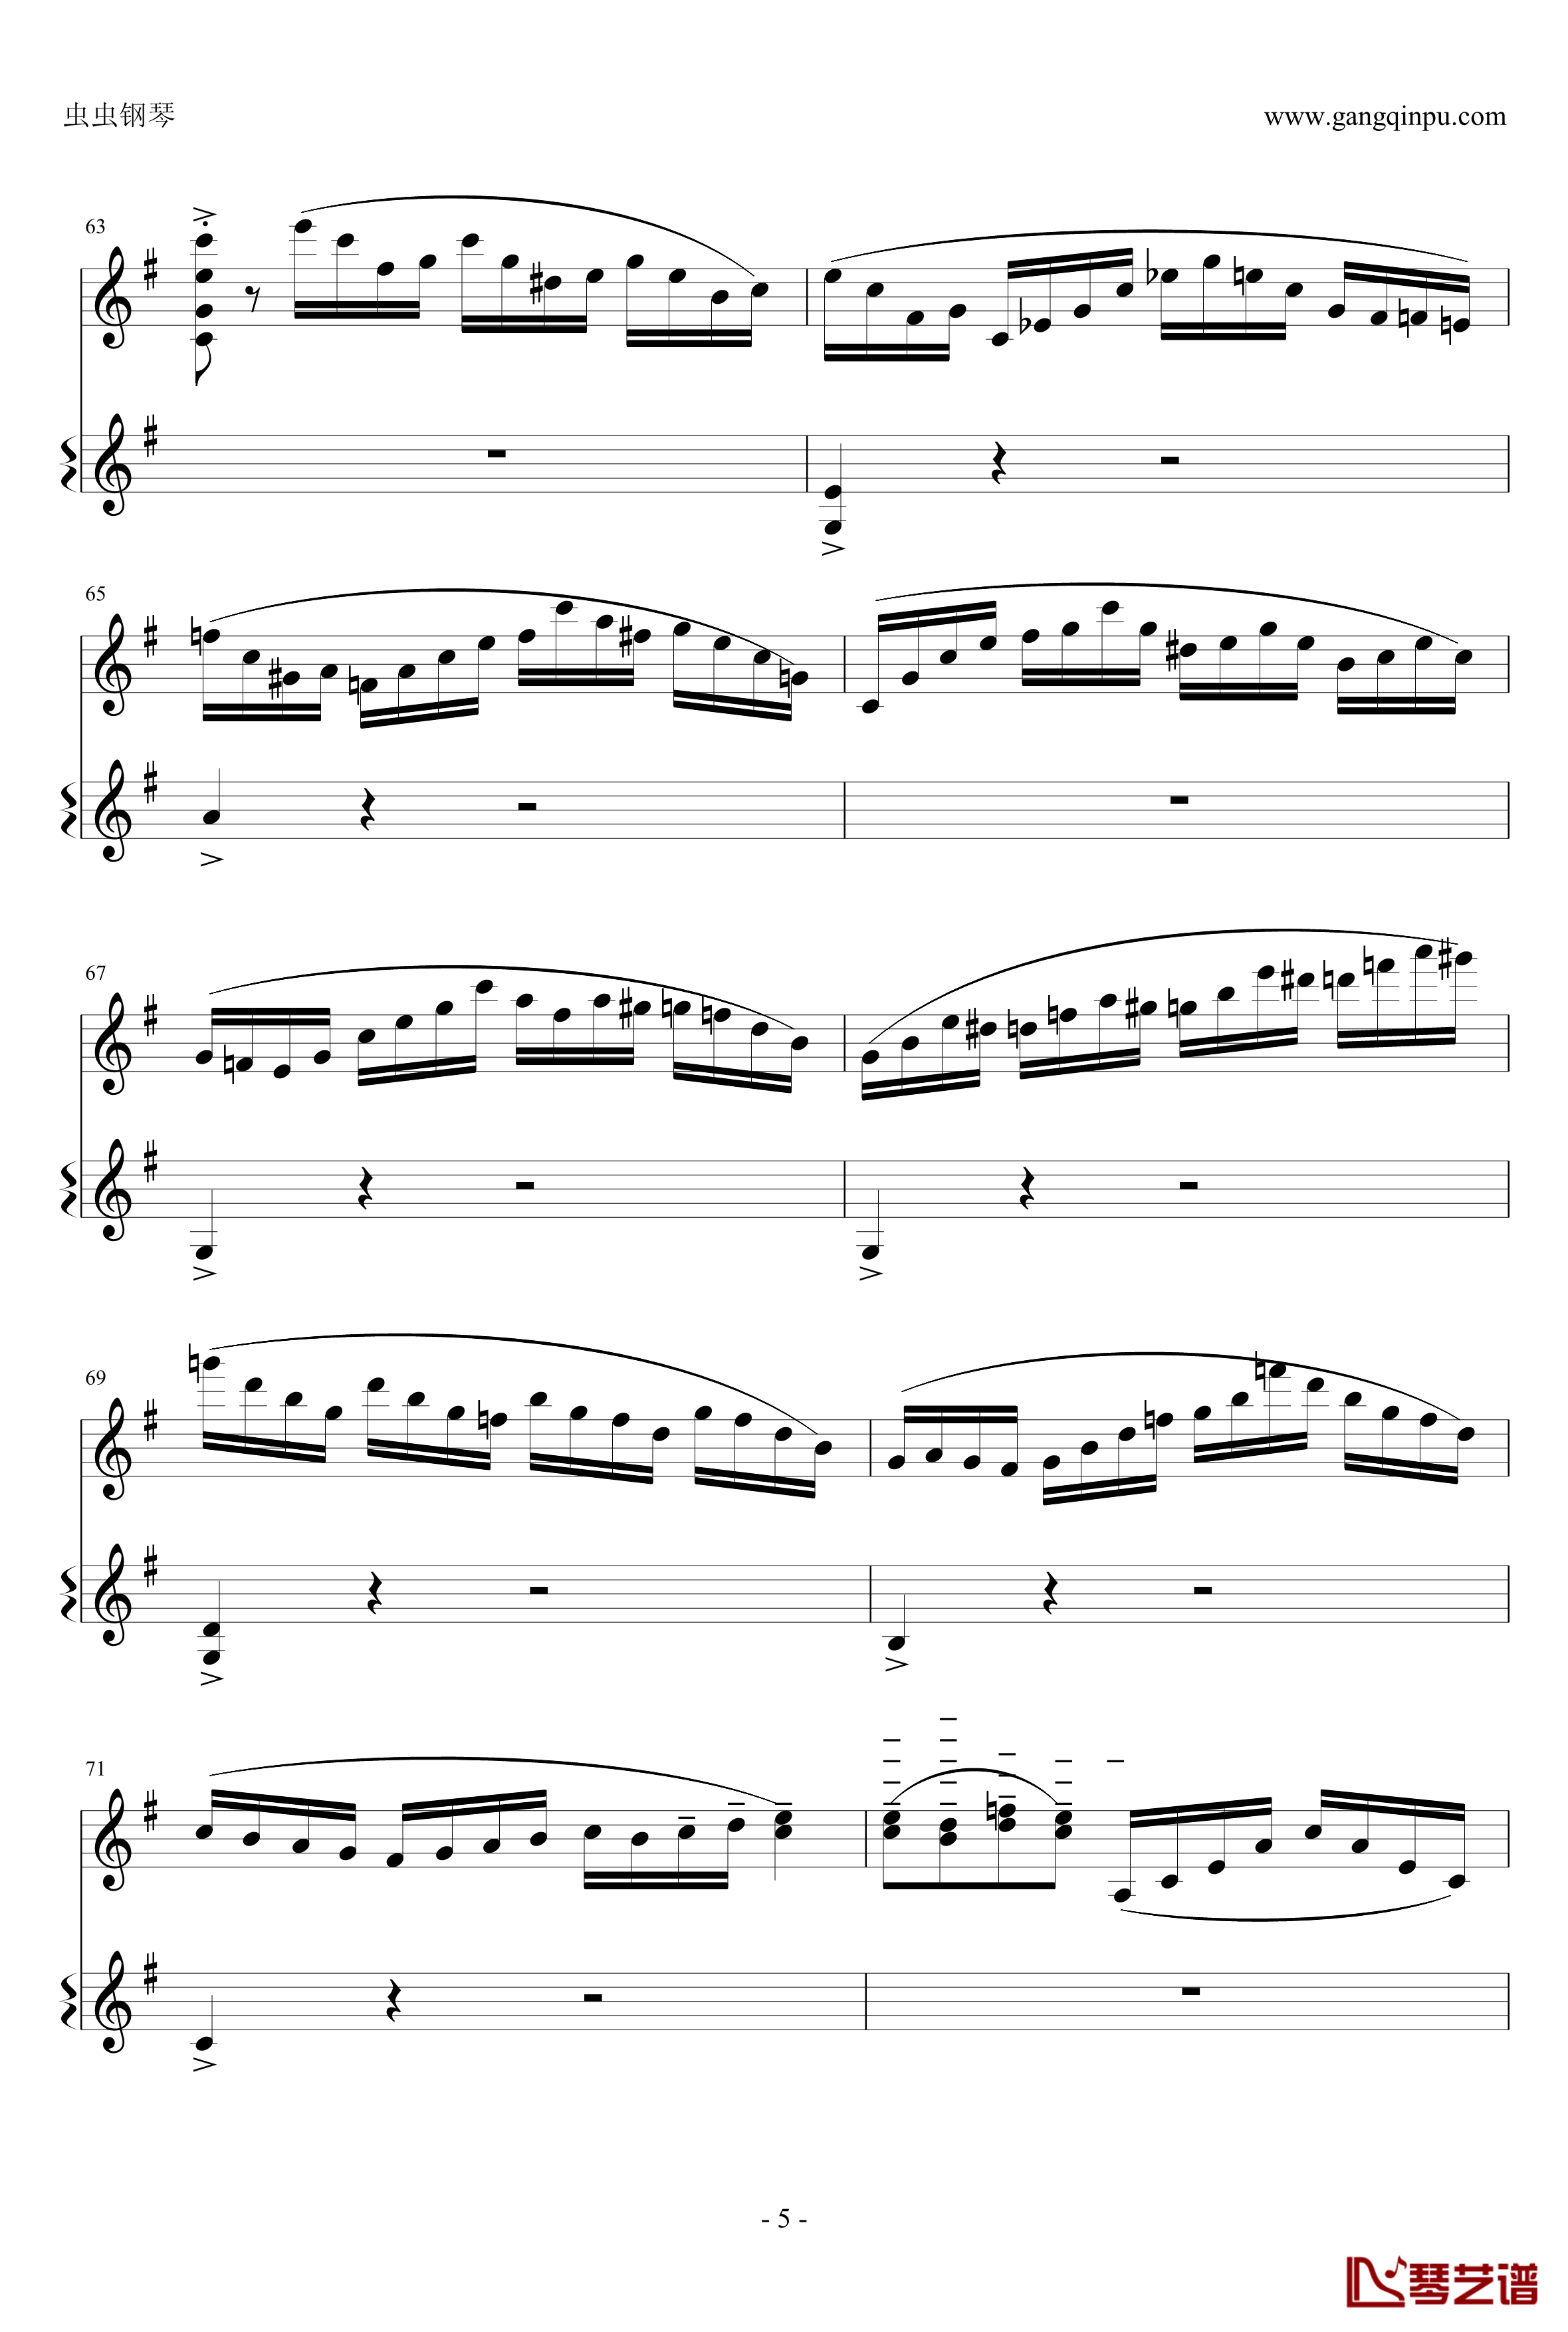 意大利国歌钢琴谱-变奏曲修改版-DXF5